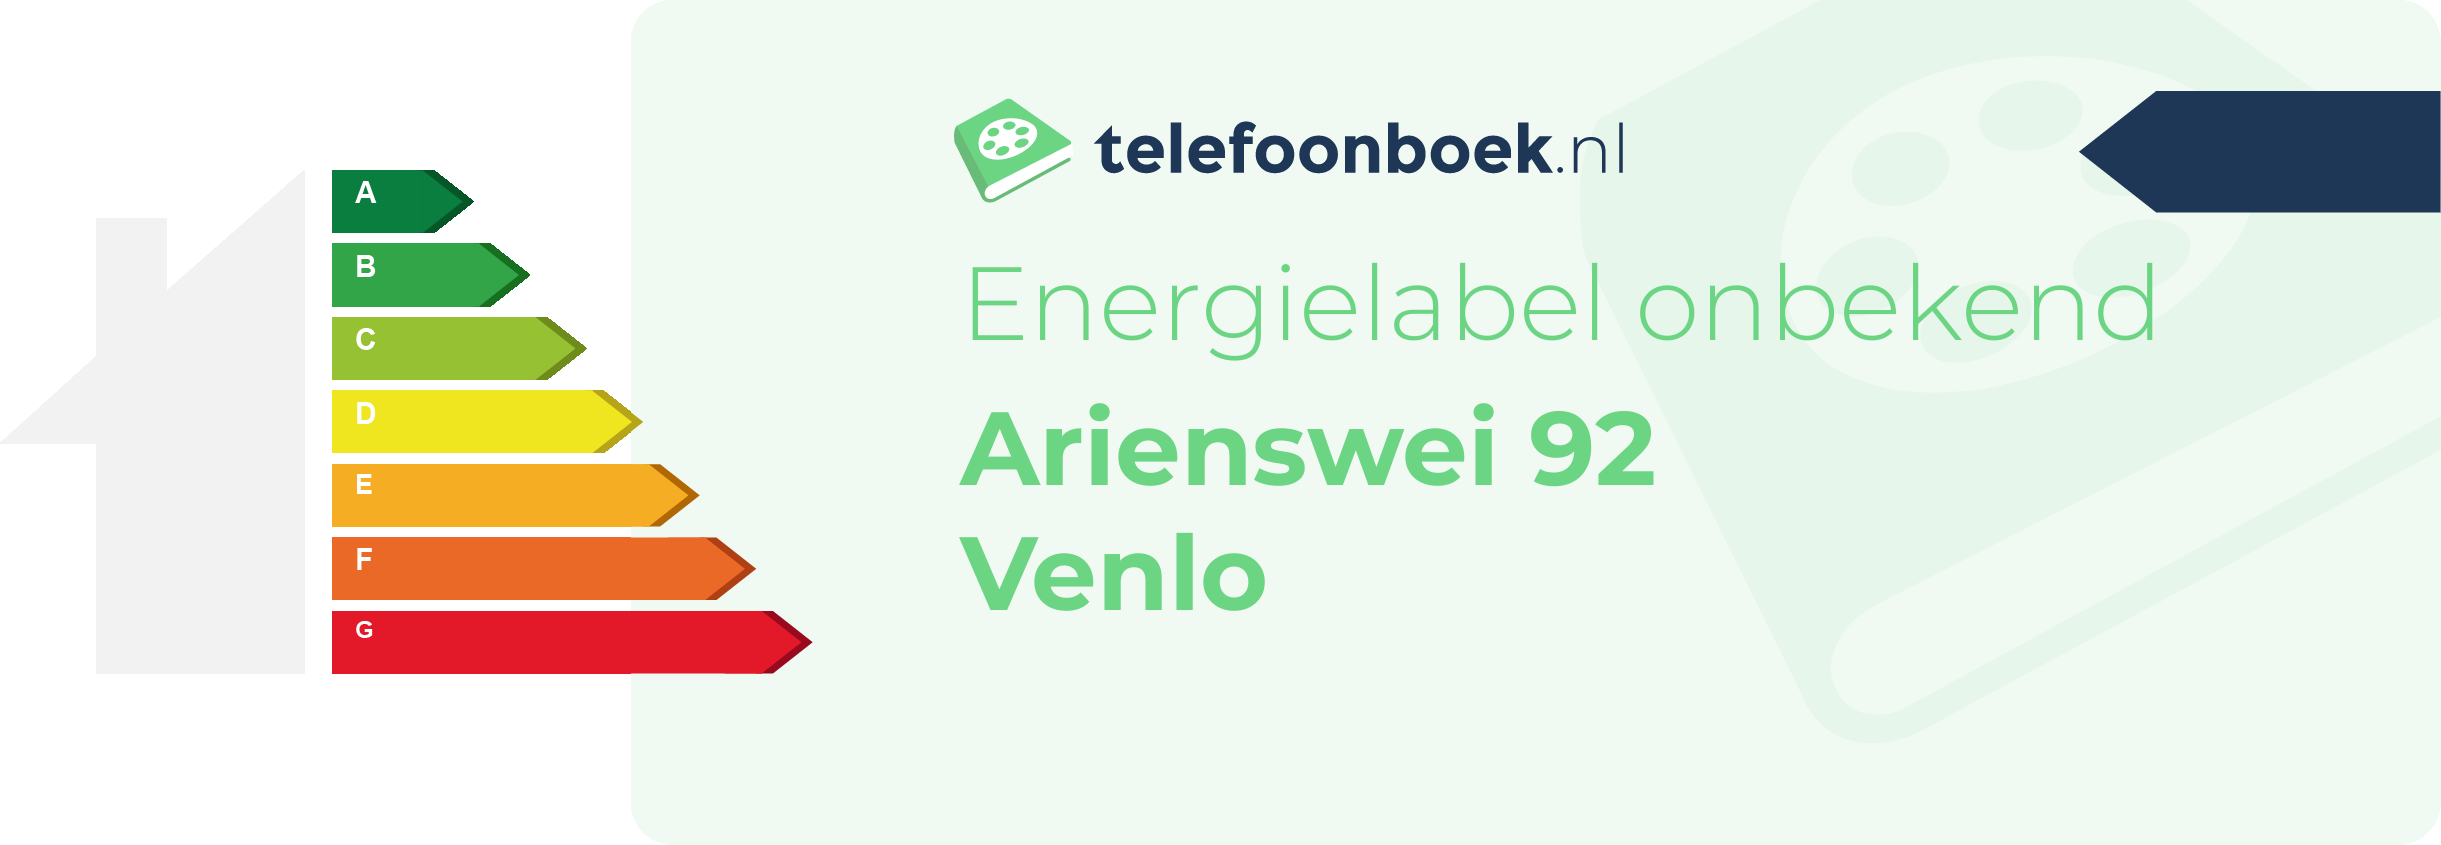 Energielabel Arienswei 92 Venlo